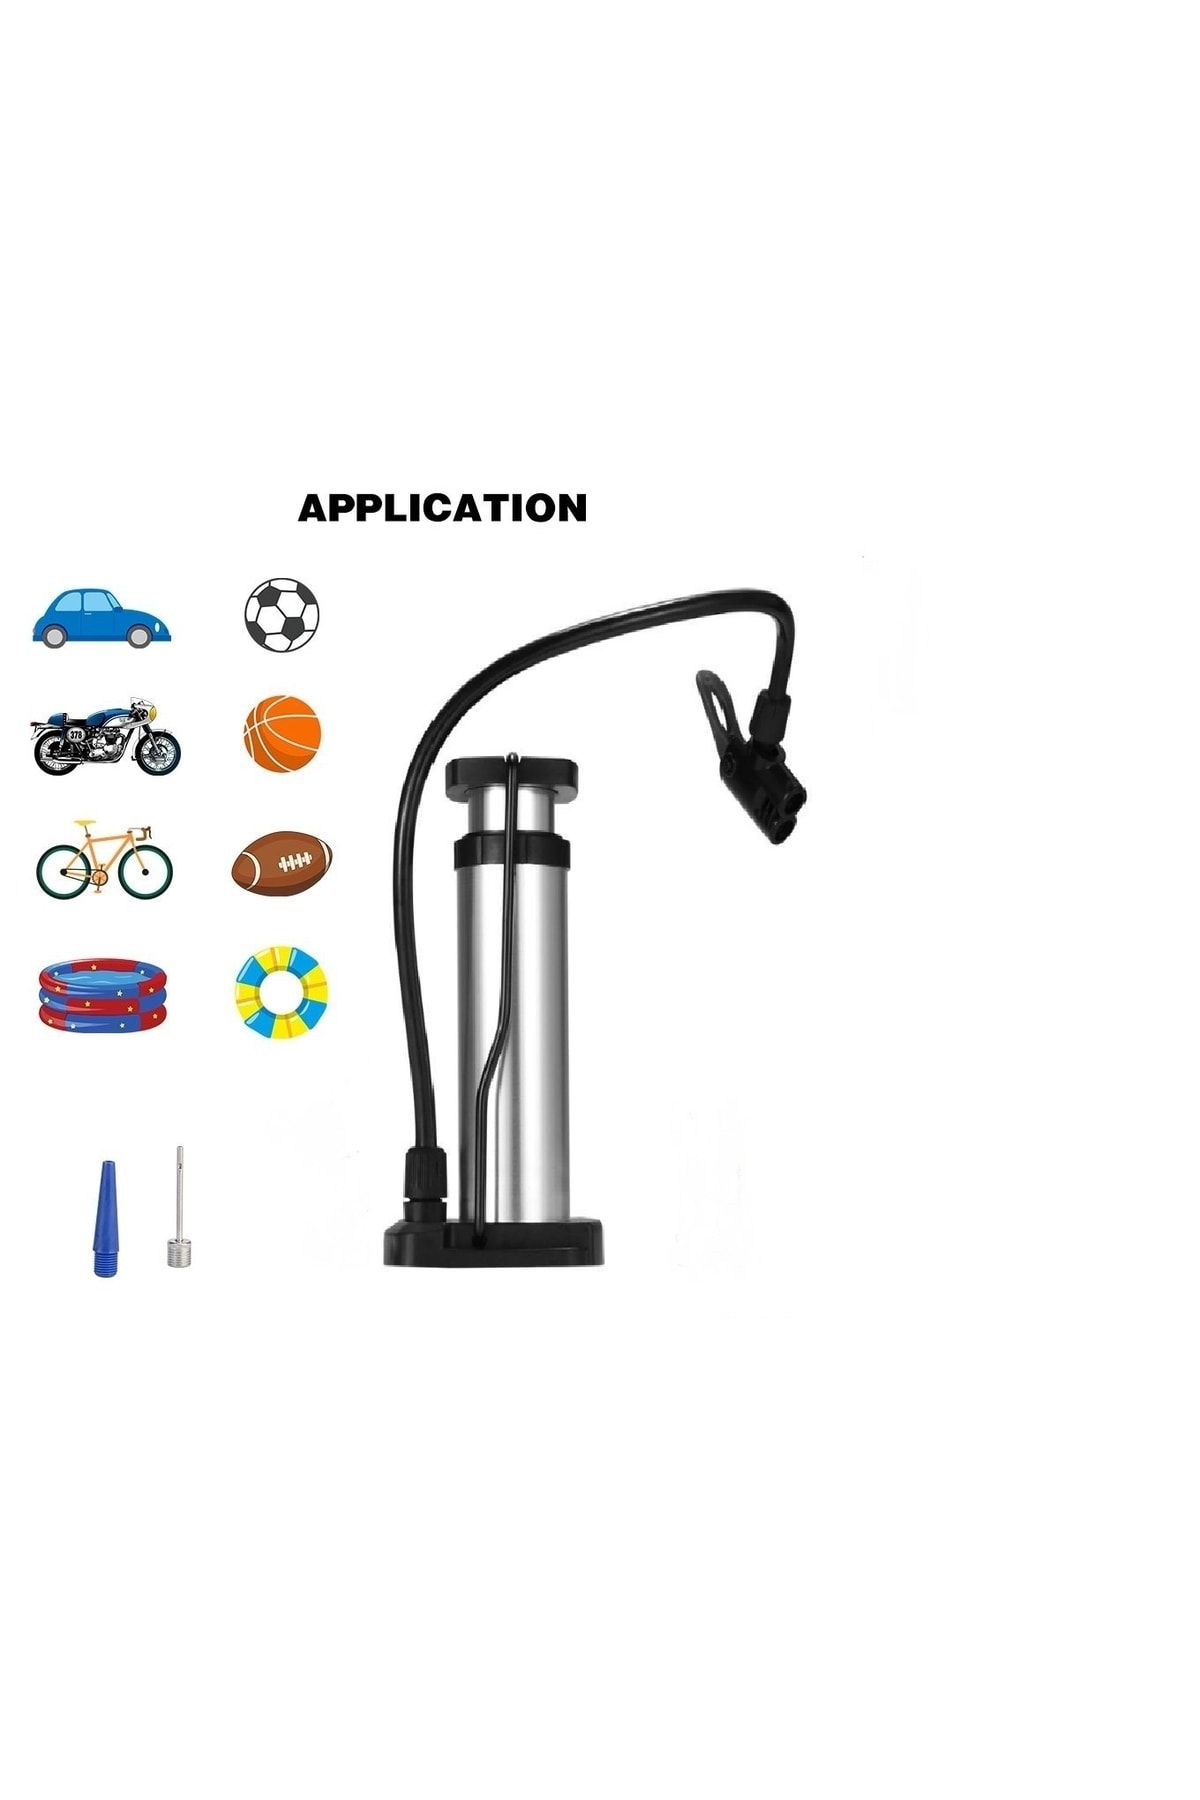 wiwi Bisiklet Pompa Lastik Hava Şişirme Pompası Araba Motor-bisiklet-top-bot